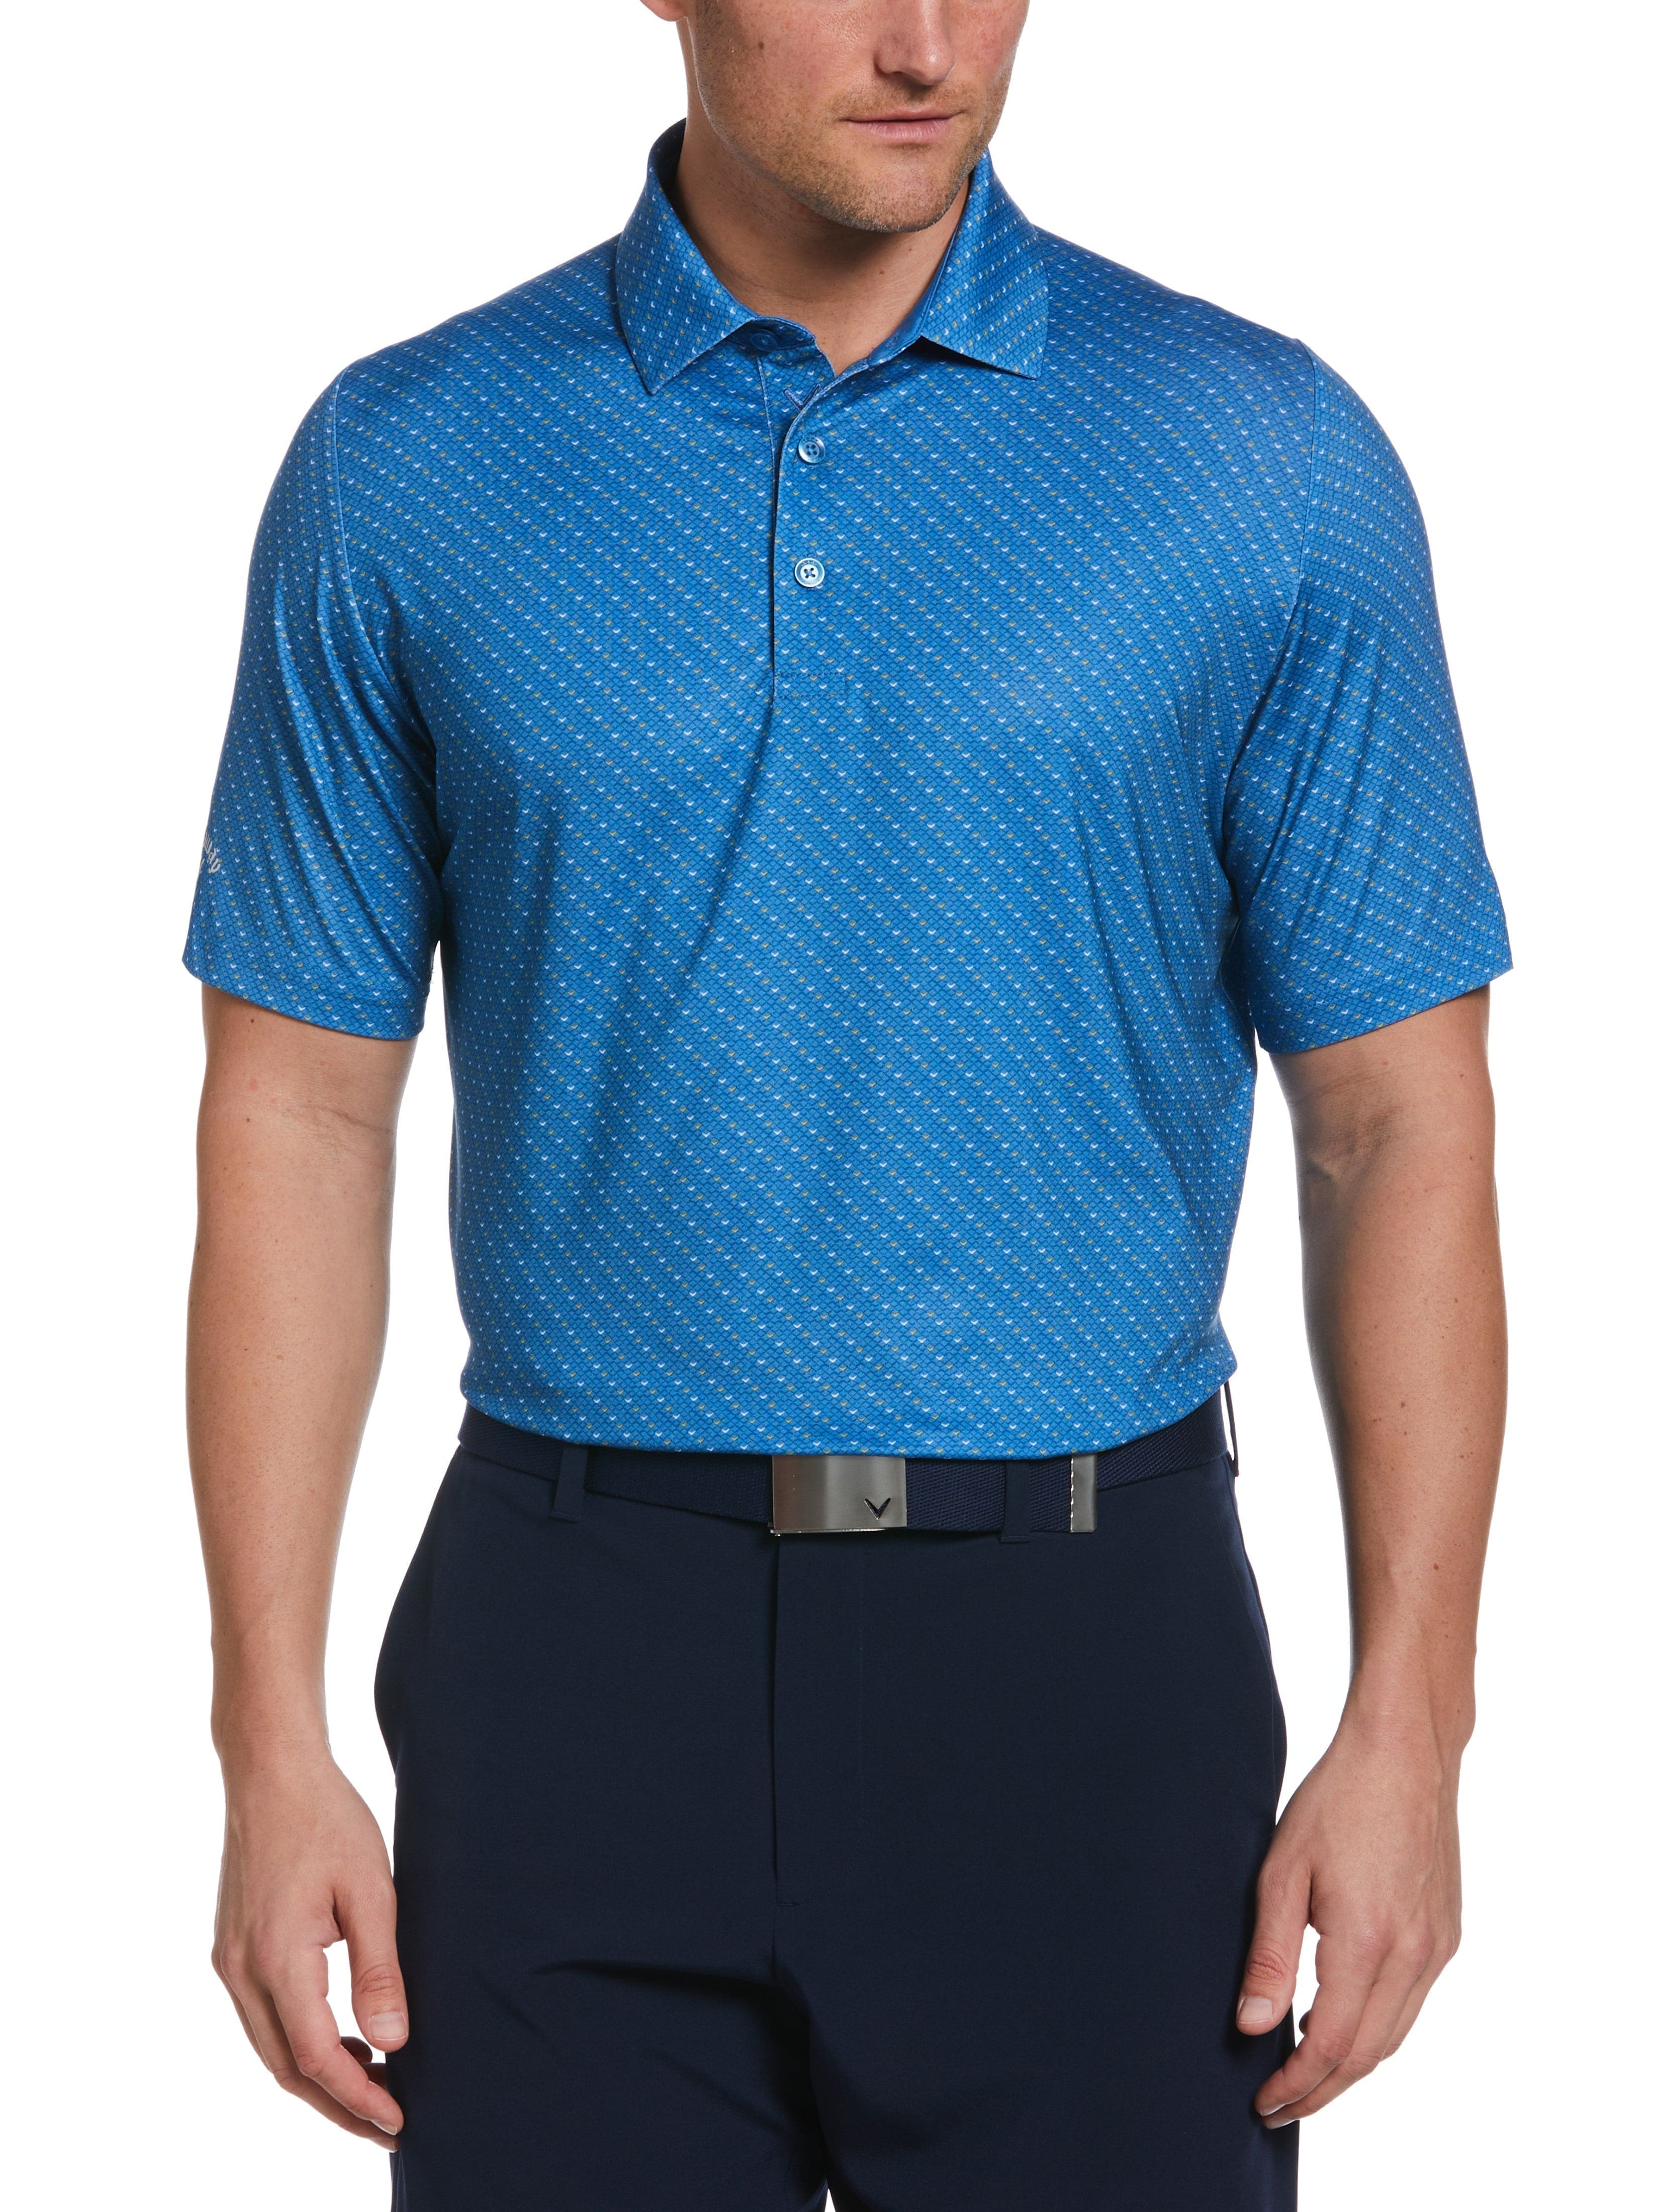 Callaway Apparel Mens Swing Tech Allover Chevron Golf Polo Shirt, Size Medium, Vallarta Blue, Polyester/Elastane | Golf Apparel Shop